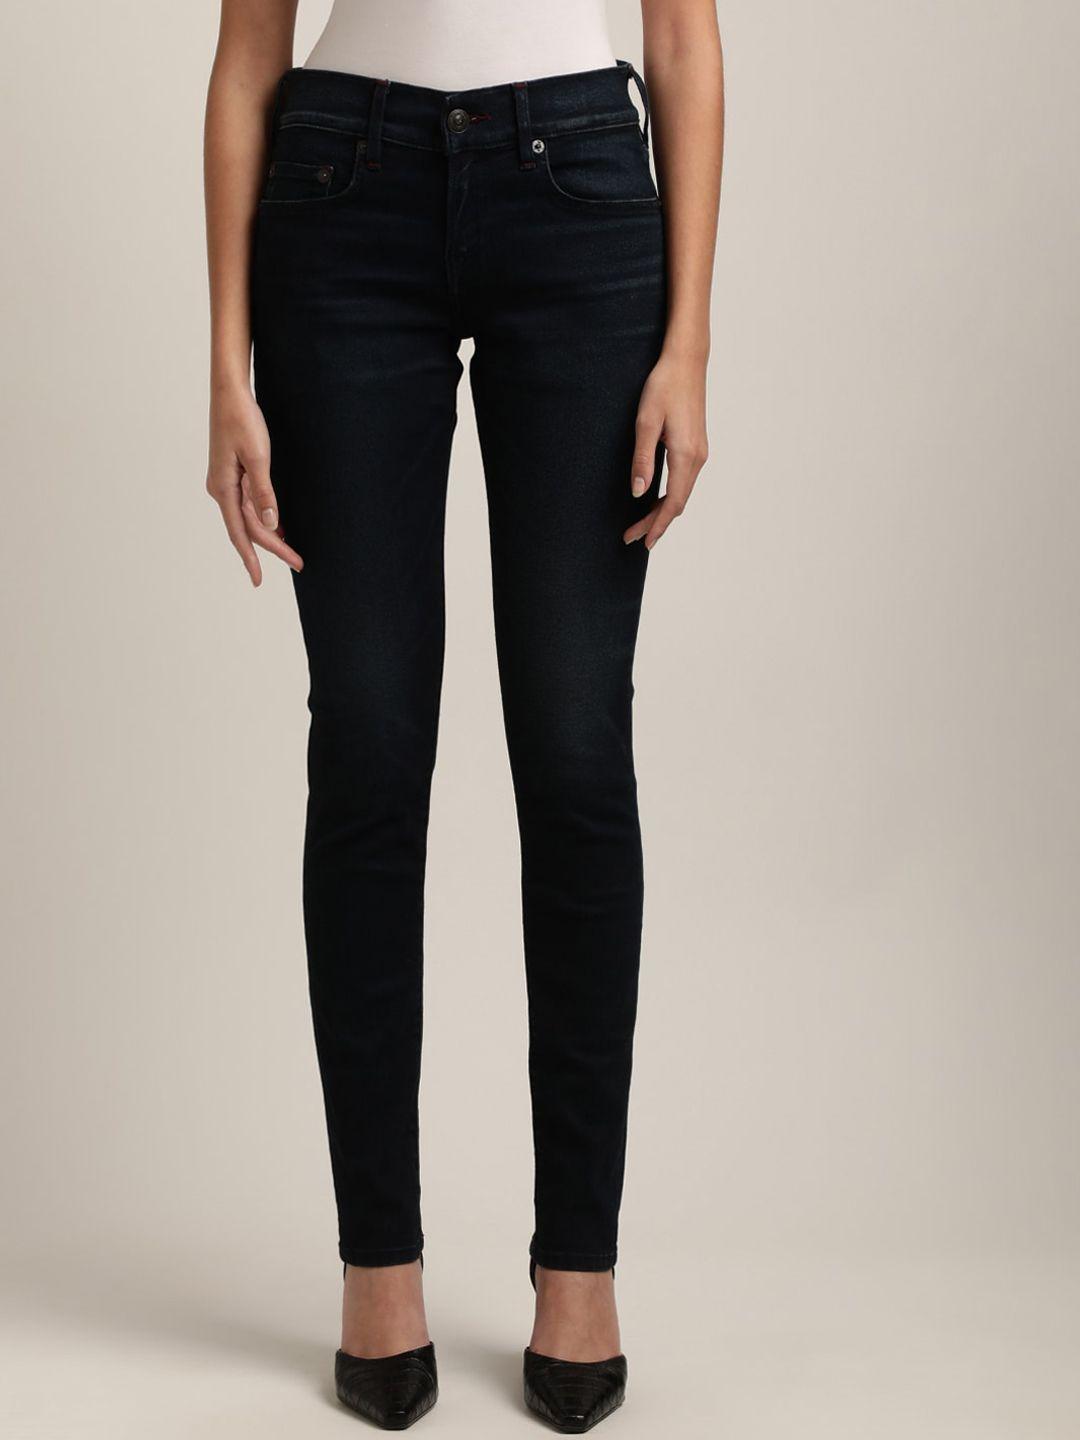 true-religion-women-black-skinny-fit-jeans